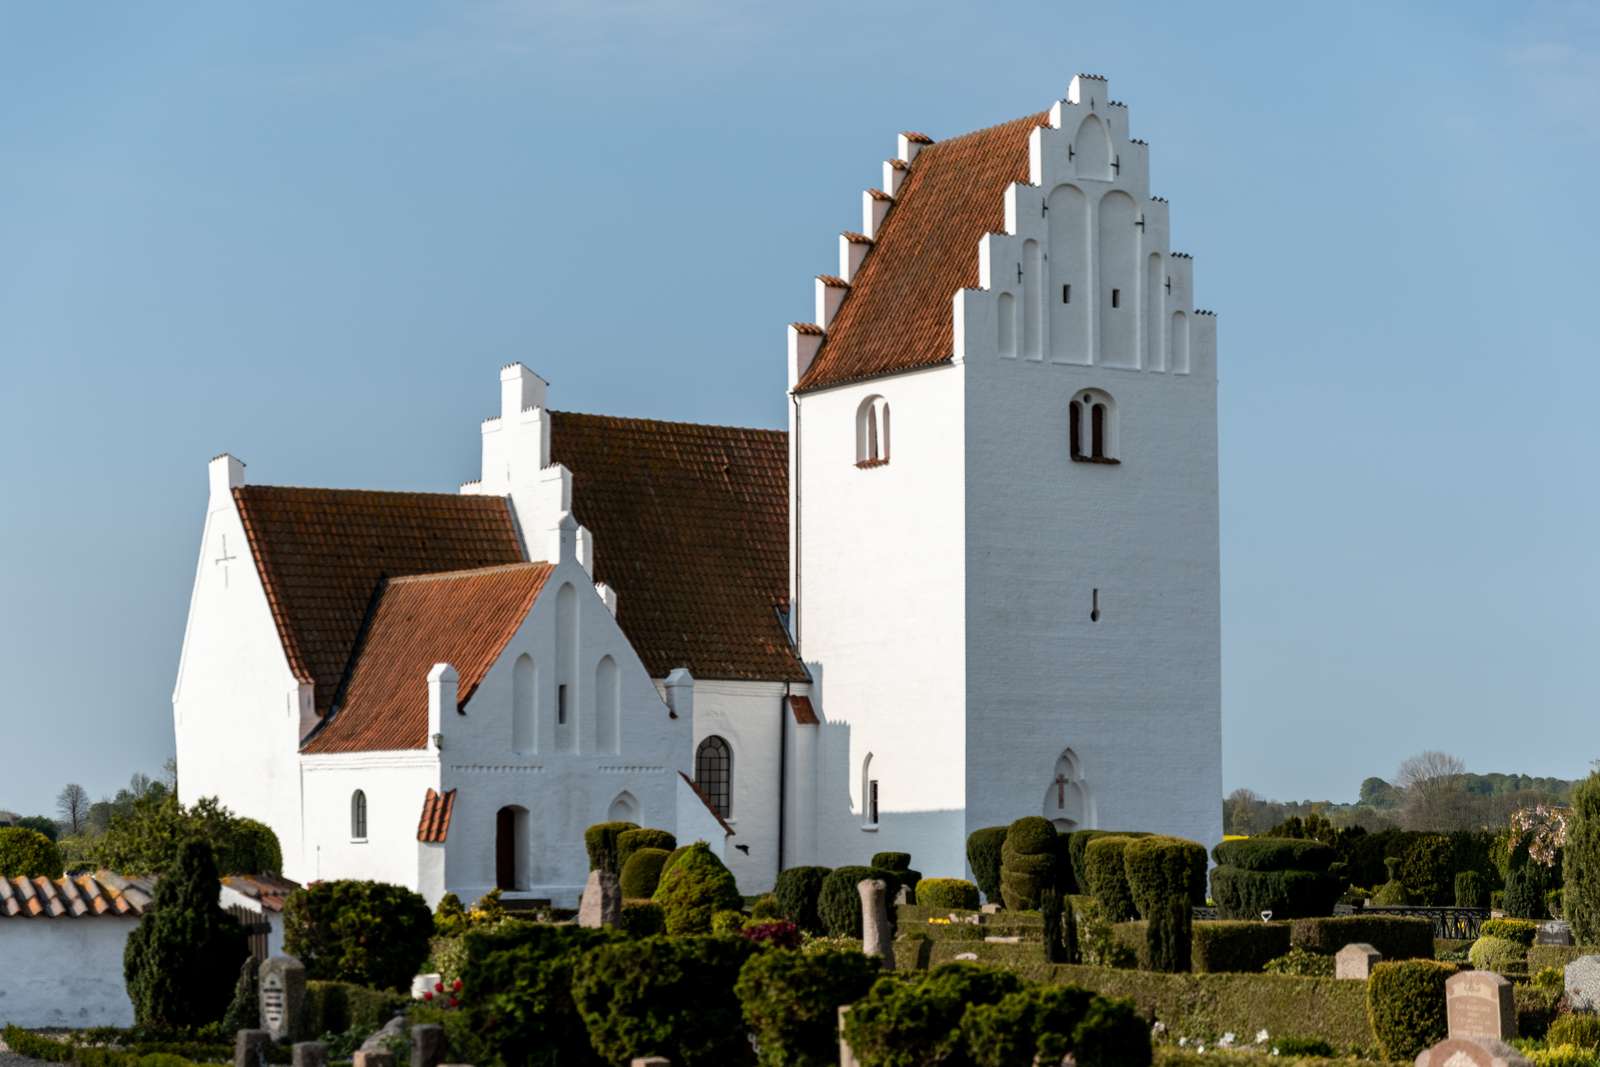 Jungshoved Kirke byder på fortællinger om kirkens historie samt slottet, der engang lå herude. Gøngehøvdingens farefulde bedrifter rundes, og i kirken ses Thorvaldsens altertavle og døbefont.